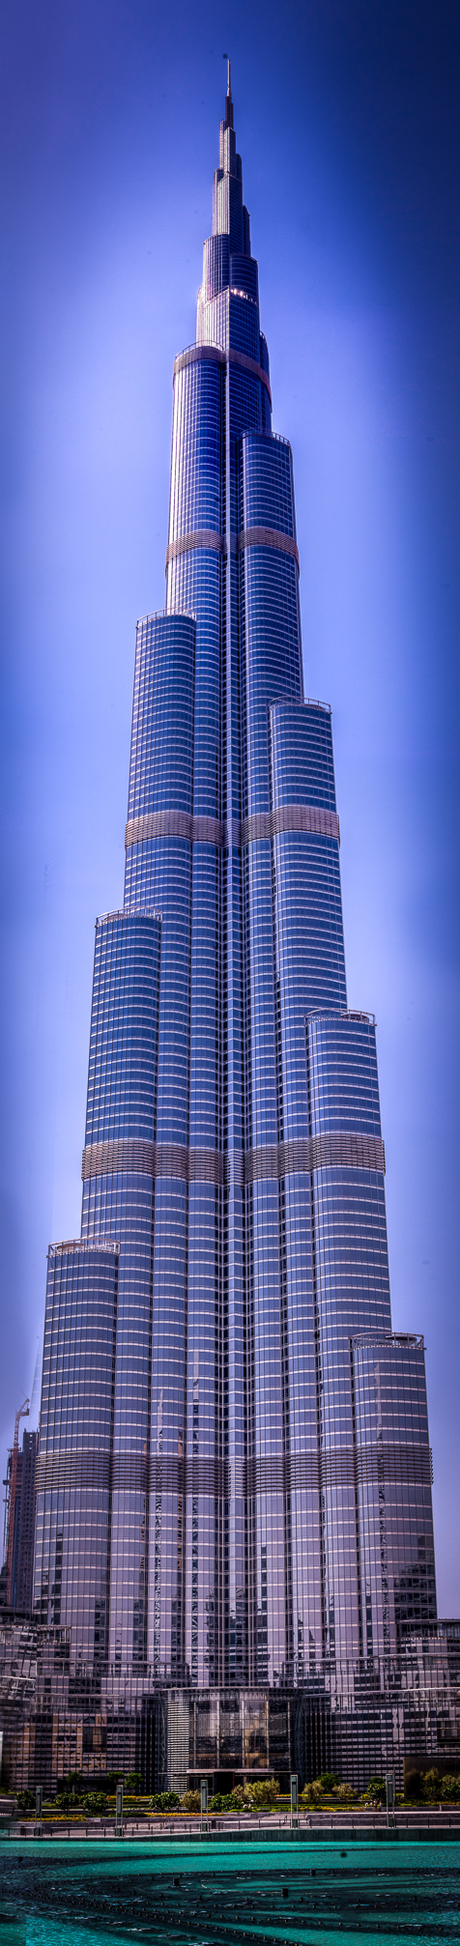 Panorama Dubai Burj Khalifa